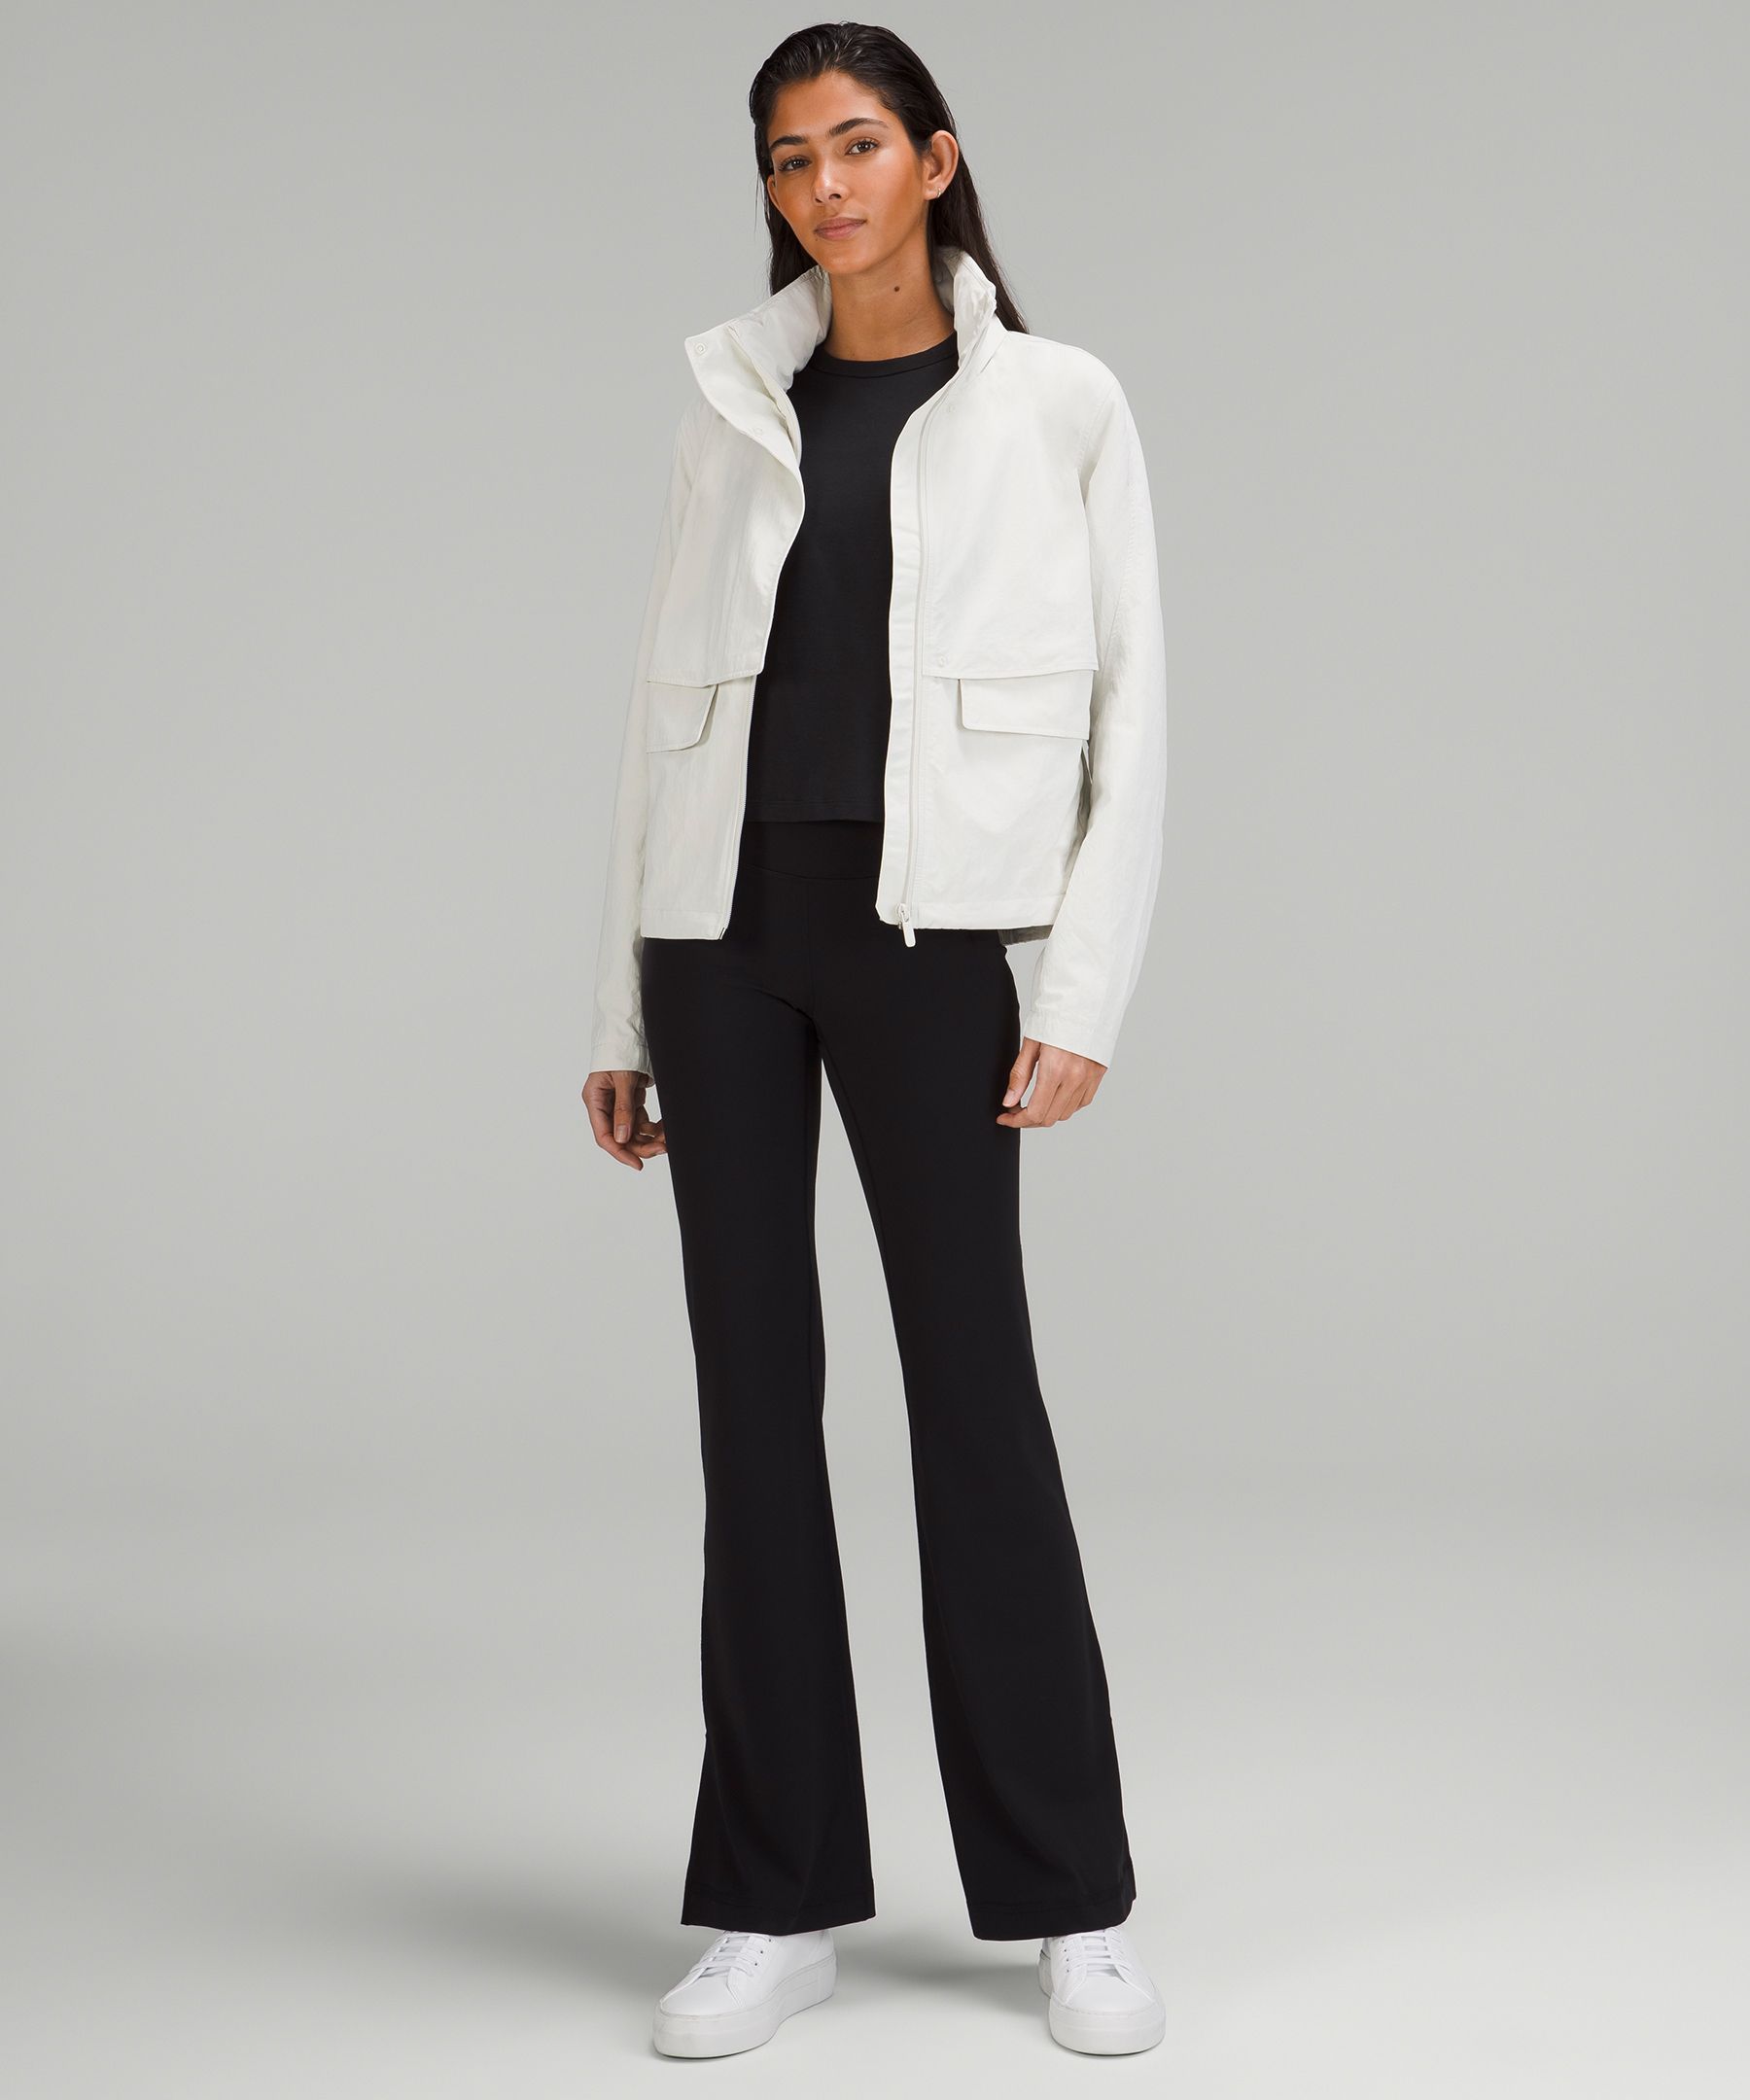 lululemon athletica, Jackets & Coats, Lululemon Athletica Womens Jacket  Model Rn 6259 Ca 35801